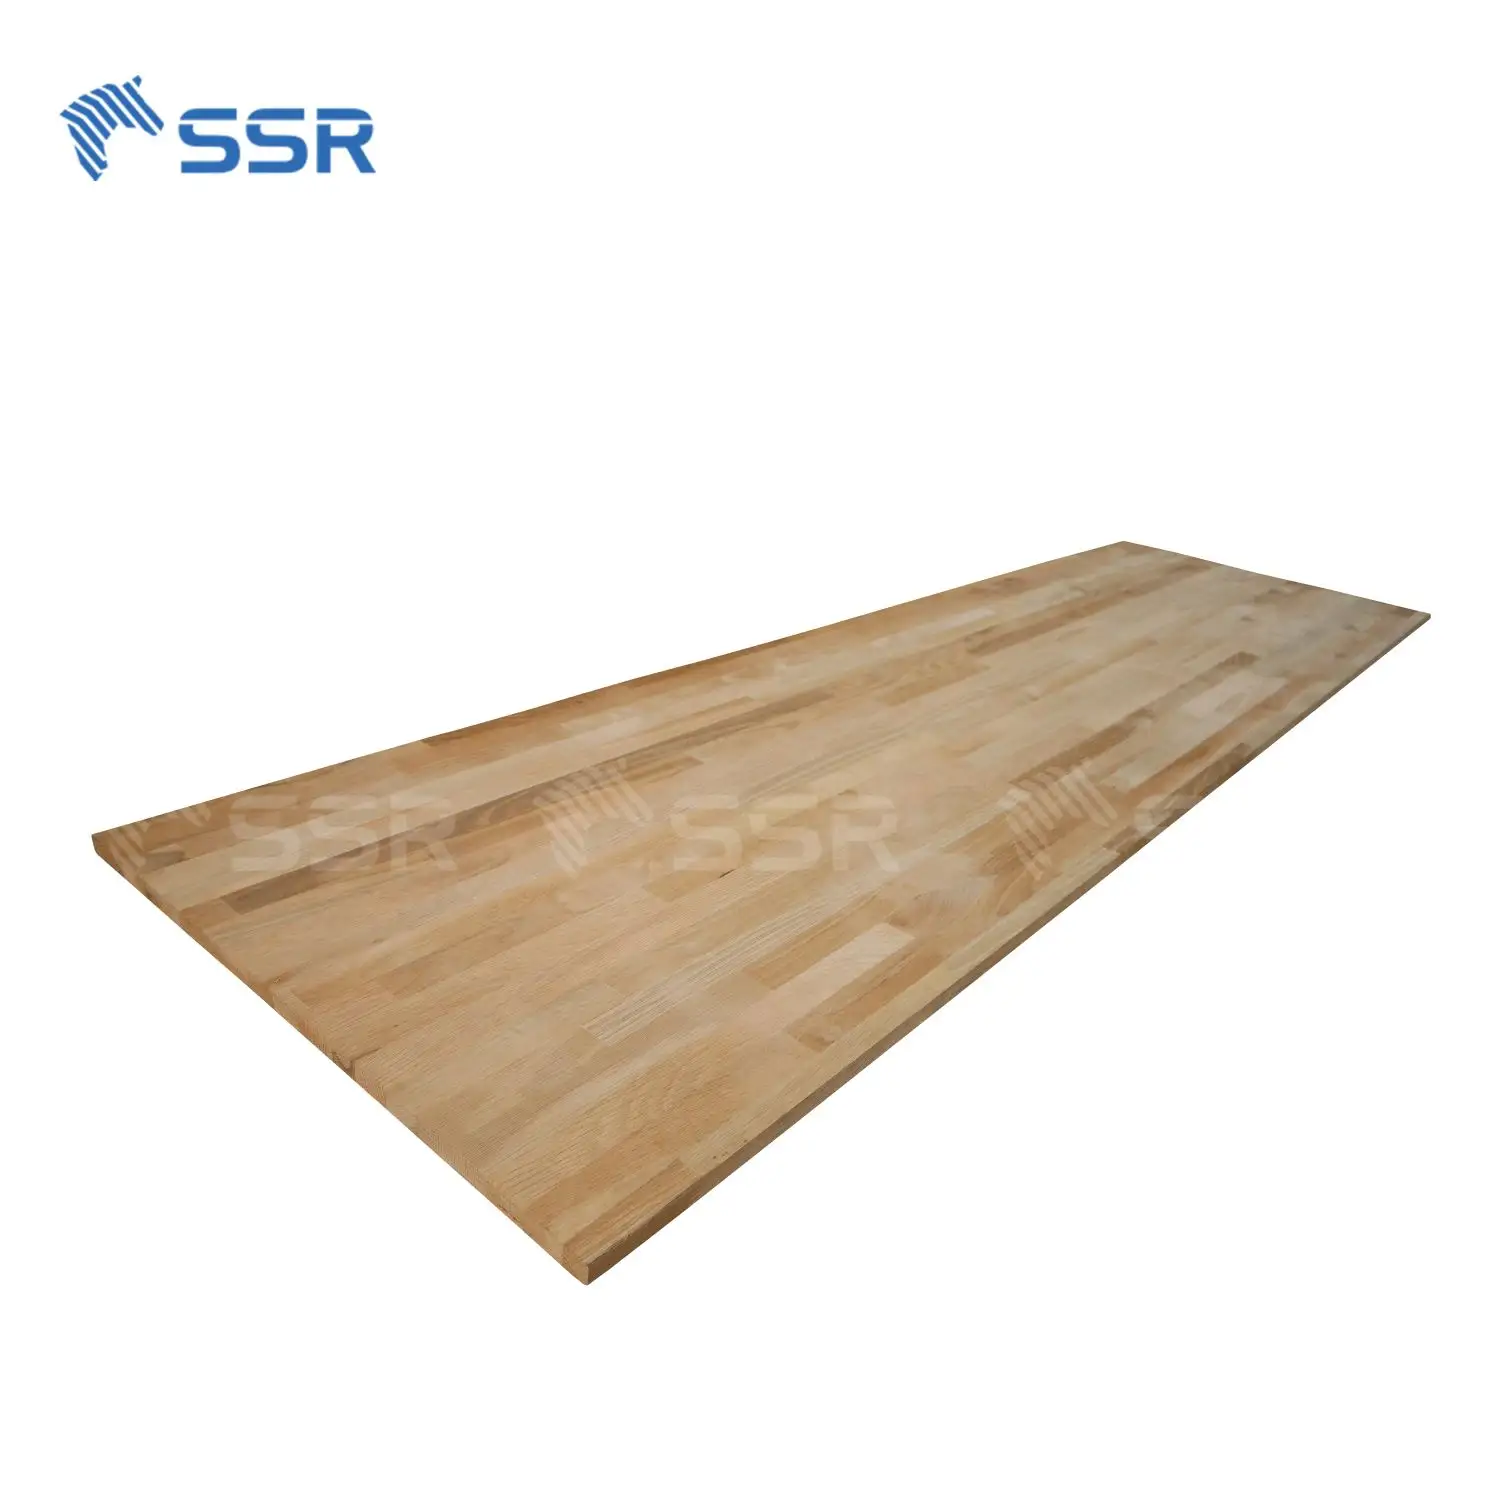 SSR VINA-дубовый деревянный шарнирный картон-оптовая продажа дубовый деревянный шарнирный картон дубовый деревянный панельный шарнирный картон